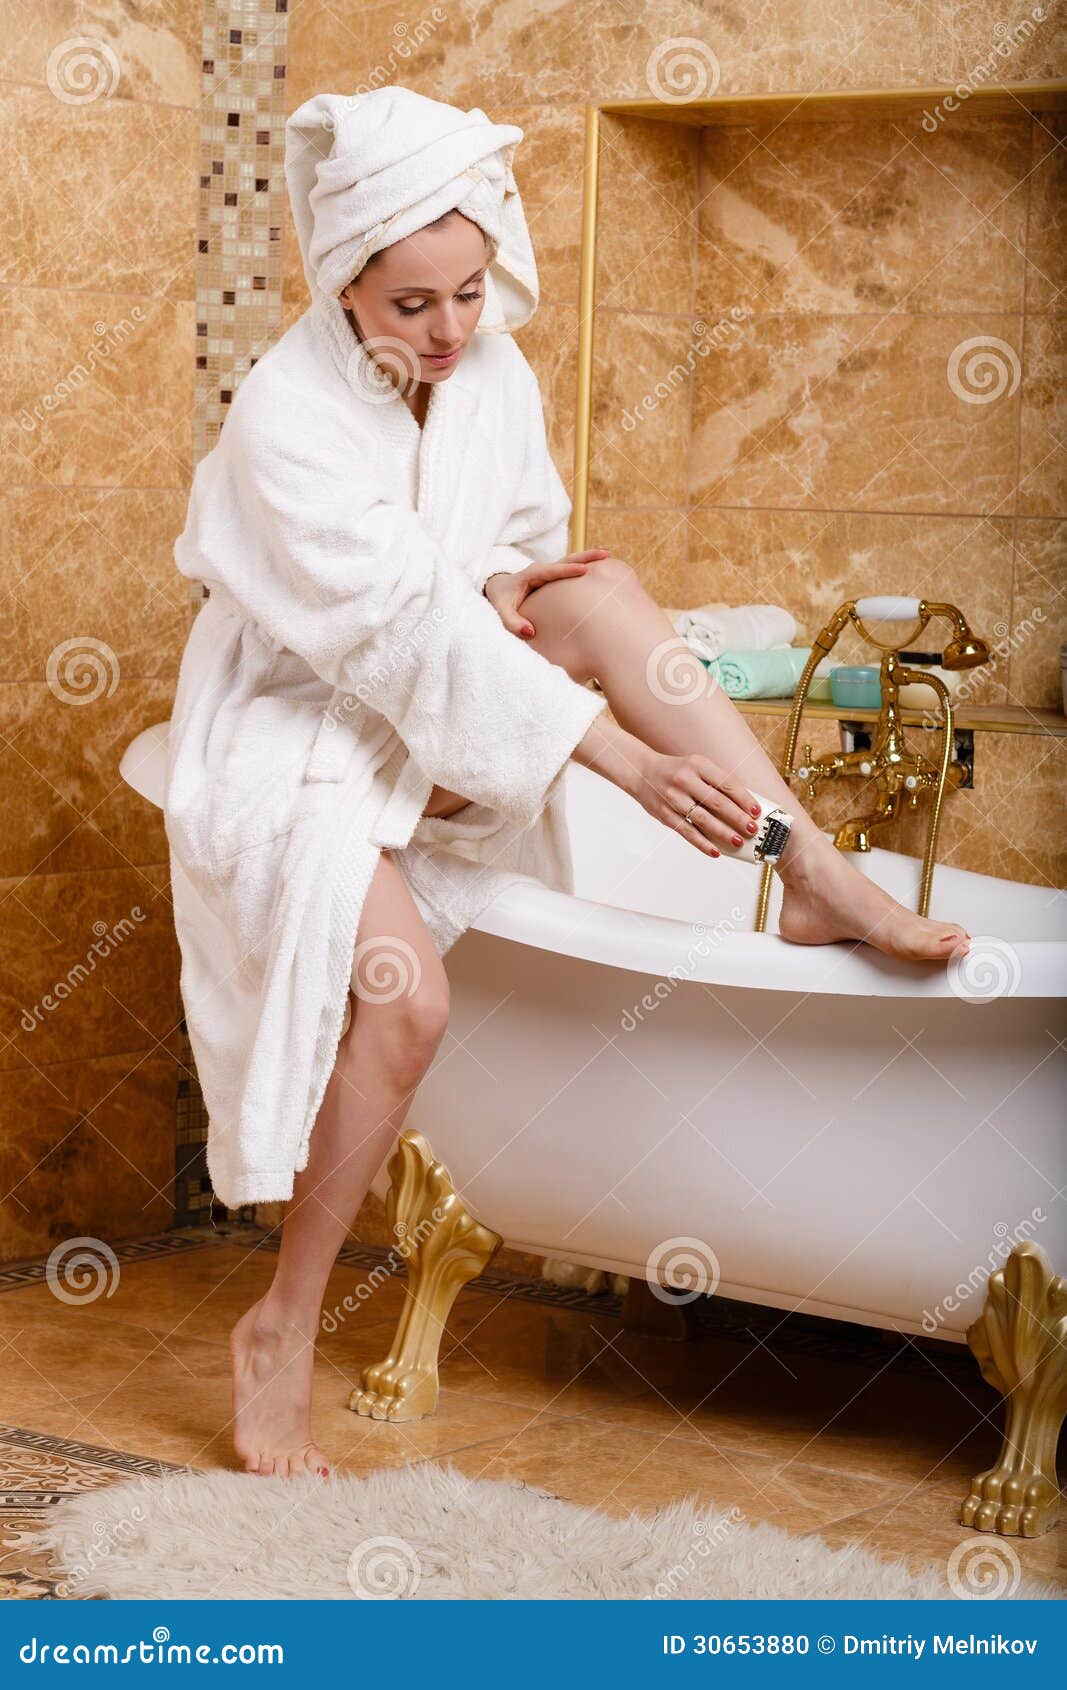 Жены после ванной. Девушка в халате в ванной. Женщина в халате в ванной. Женщина в полотенце. Халат в ванной комнате.